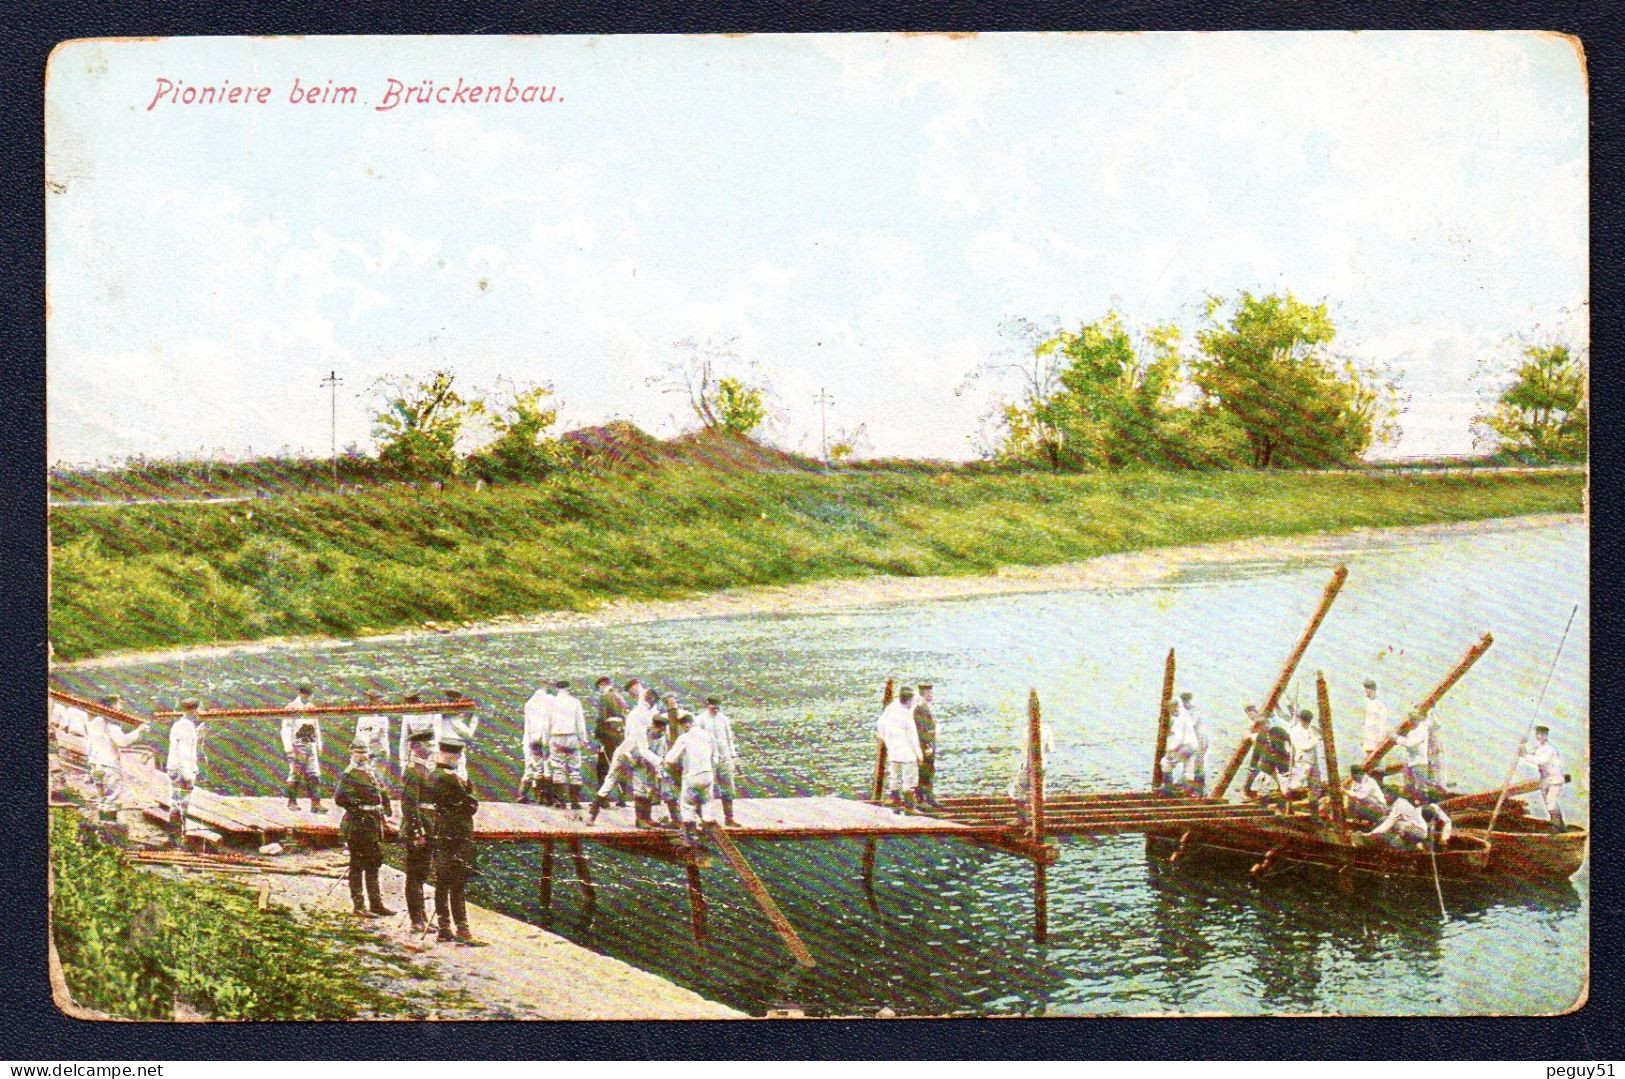 Pioniere Beim Brückenbau. Soldats Allemands Du Génie Costruisant Un Pont. Feldpost Der 10. Reserve-Div. Juin 1915 - Guerra 1914-18